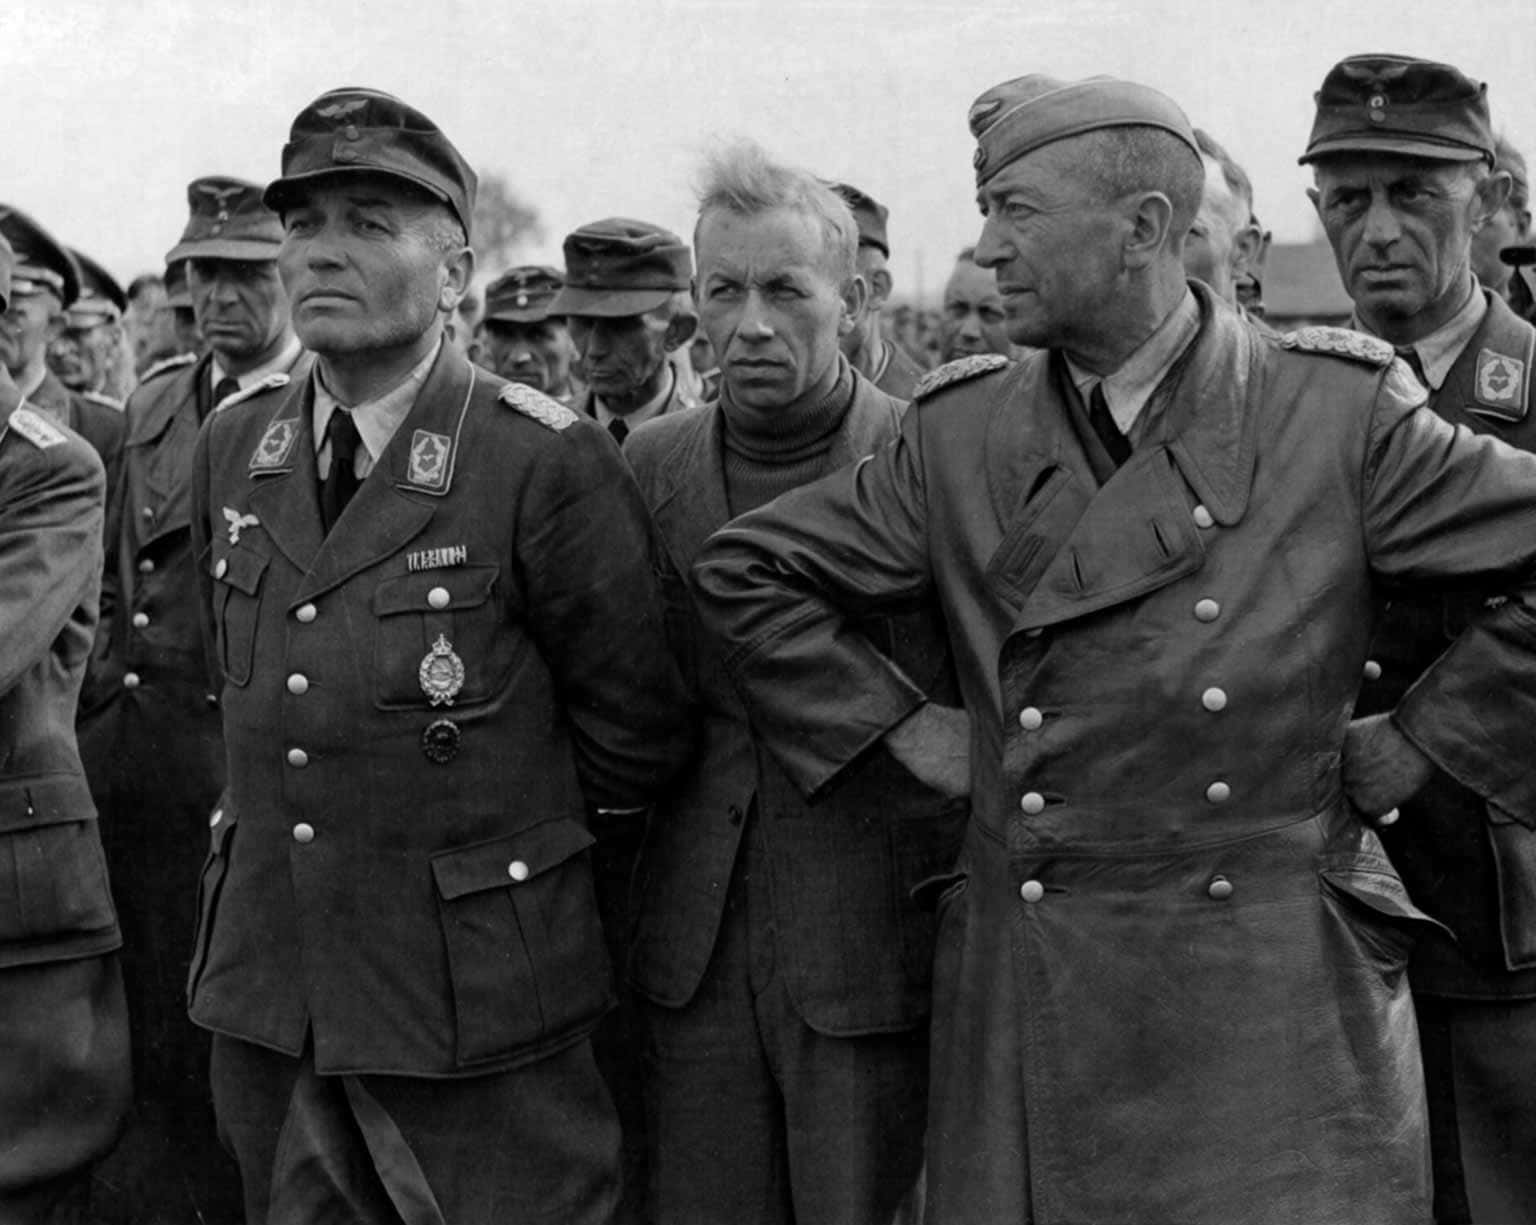 Captured Luftwaffe officers